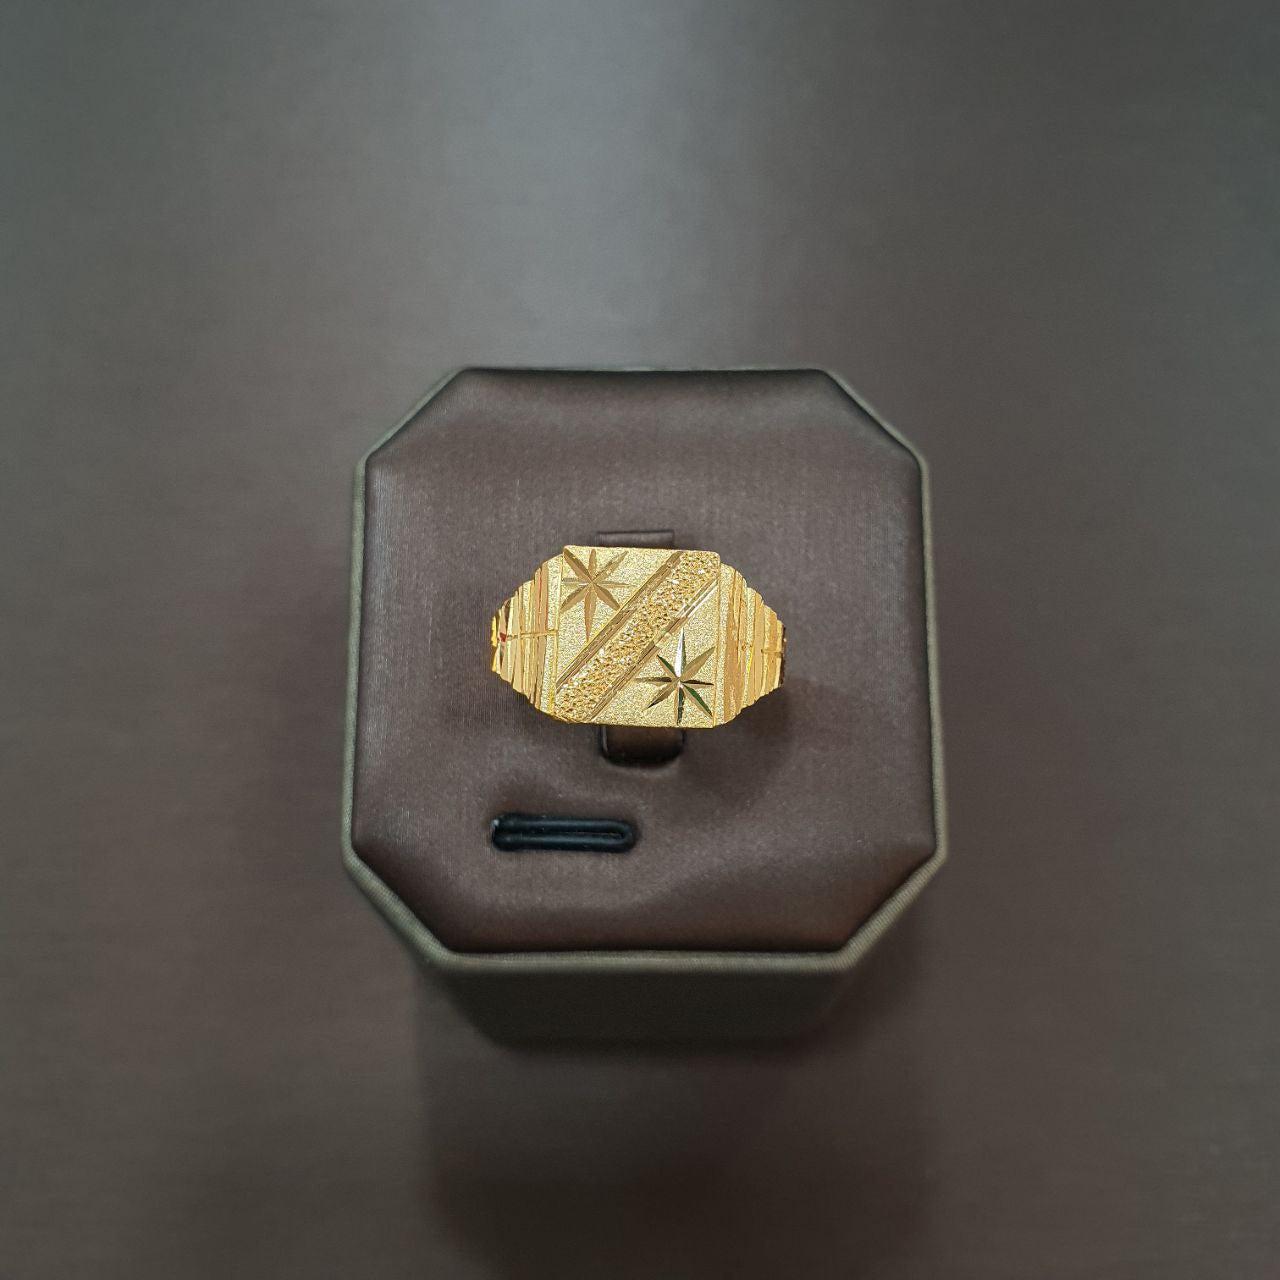 22k / 916 Gold Gent Ring different design-916 gold-Best Gold Shop